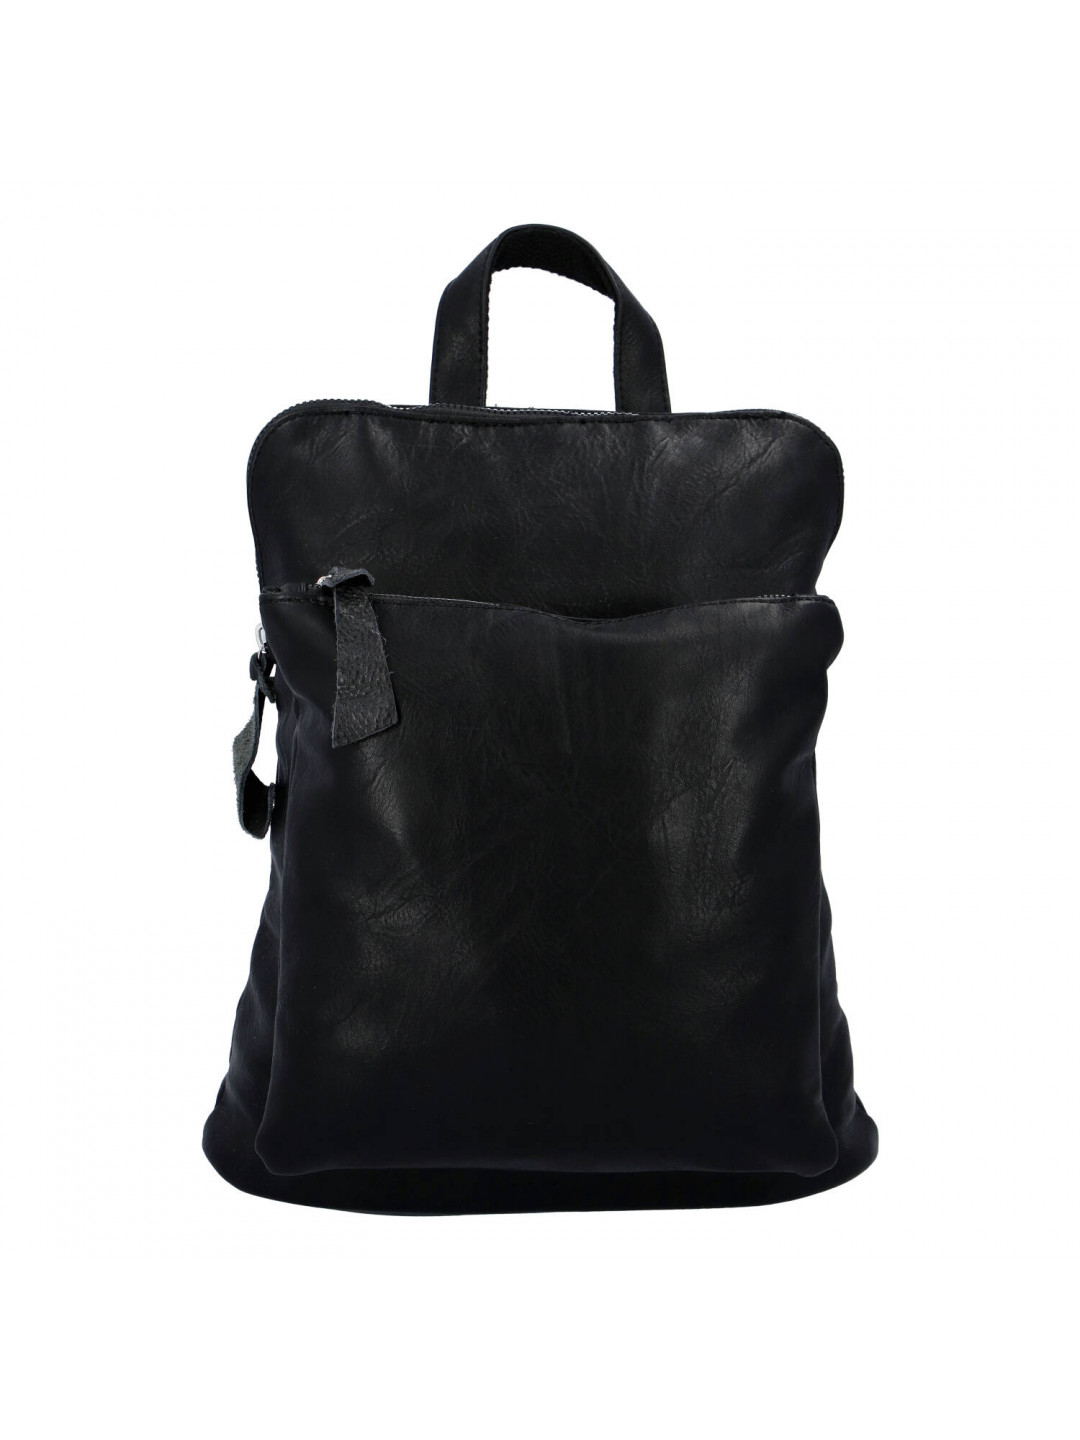 Dámský městský batoh kabelka černý – Paolo Bags Buginni